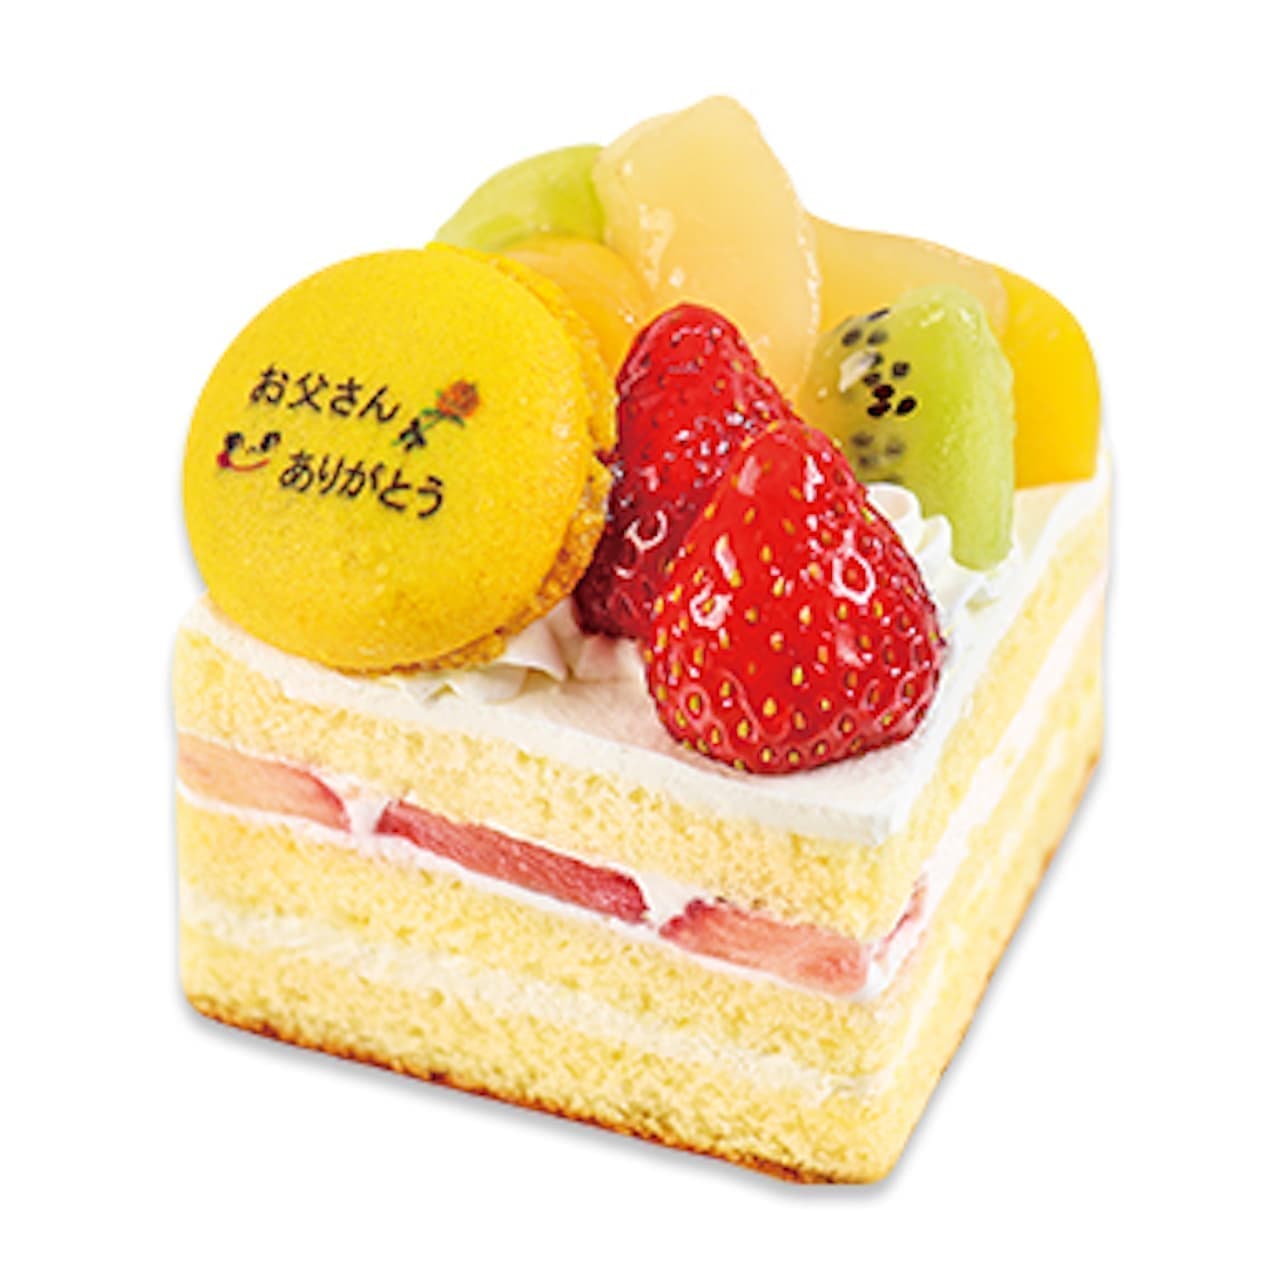 Fujiya "Celebration Cake with plenty of fruits".